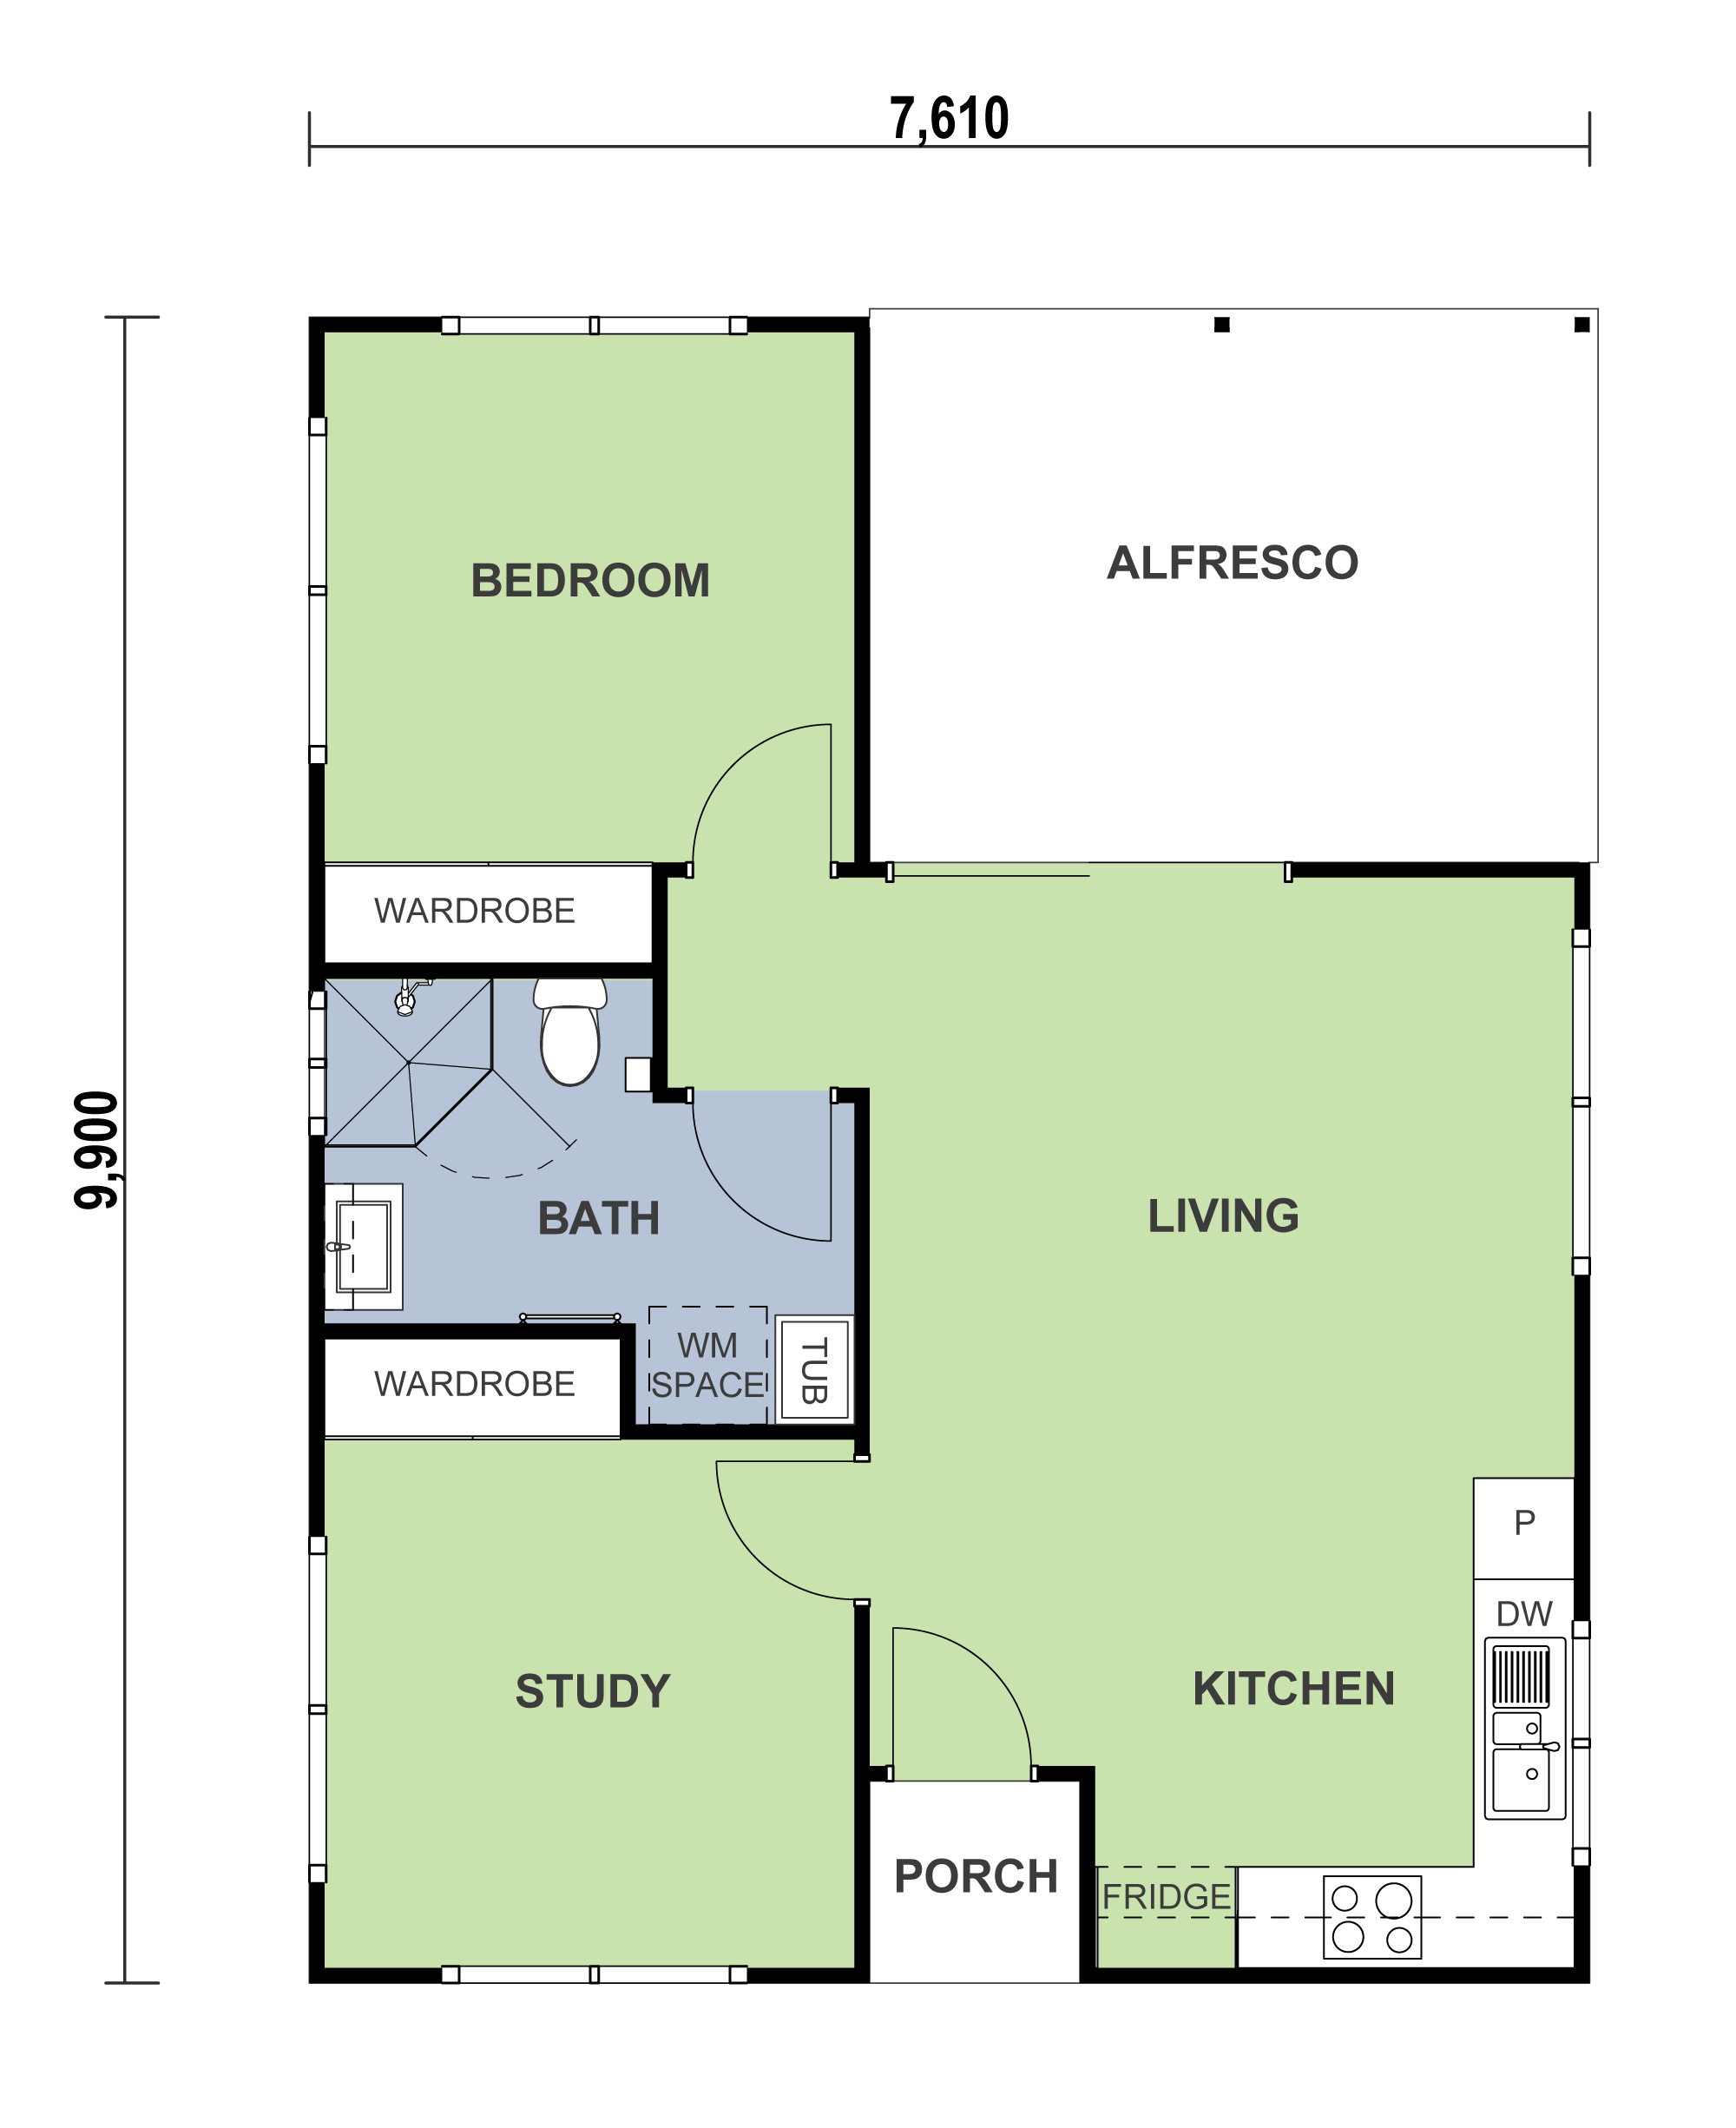 1 bedroom granny flat floor plan with alfresco